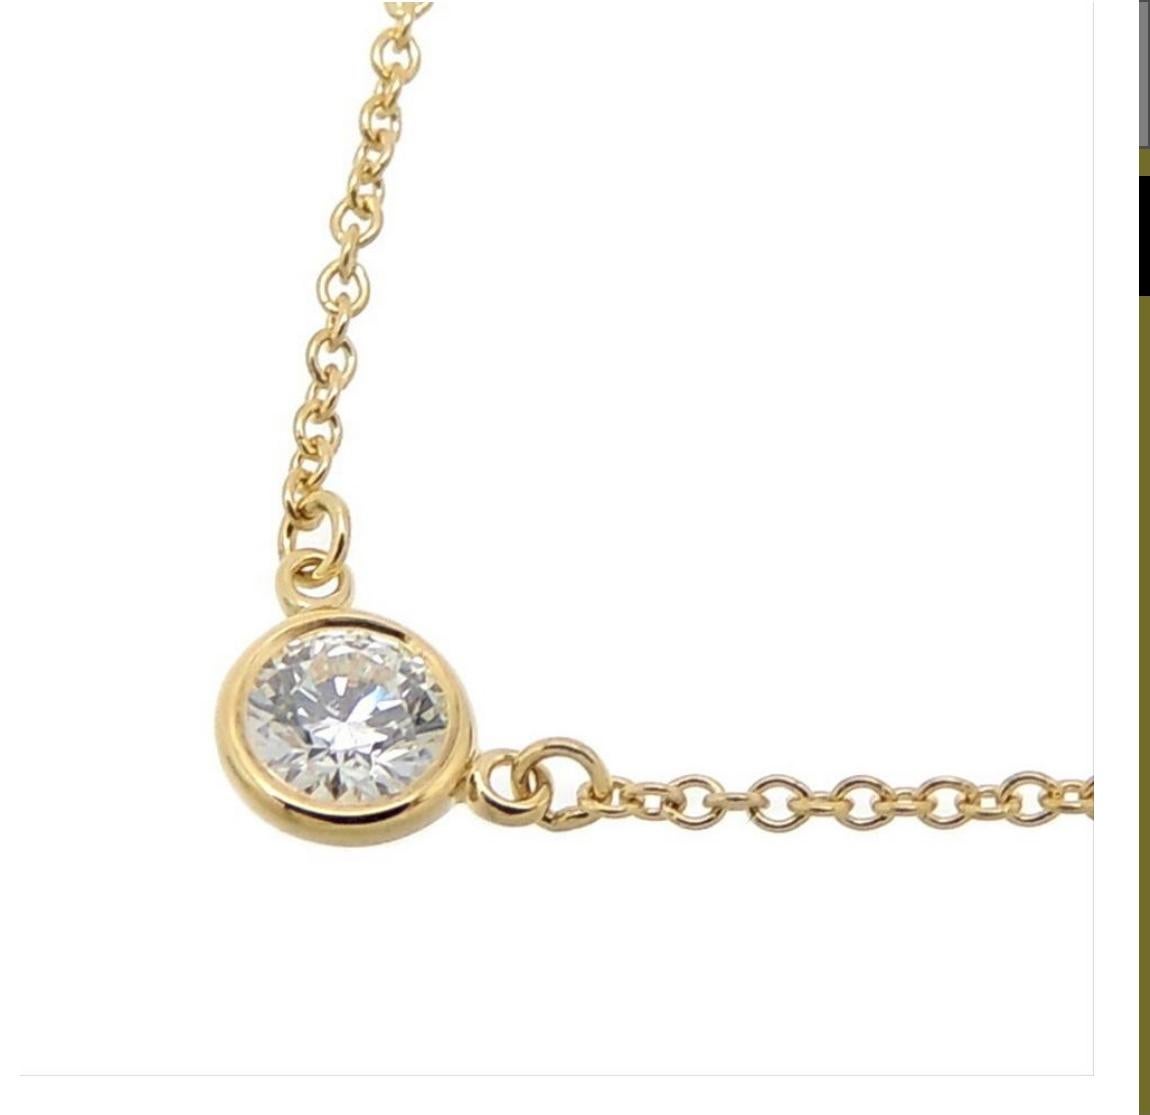 Magnifique pendentif Tiffany & Co avec un seul diamant rond de taille brillant. Une brillance absolument éblouissante et une tenue parfaite pour tous les jours.
Pierre précieuse : Diamant
Forme de la pierre : Brillant rond
Poids en carats : 0,19